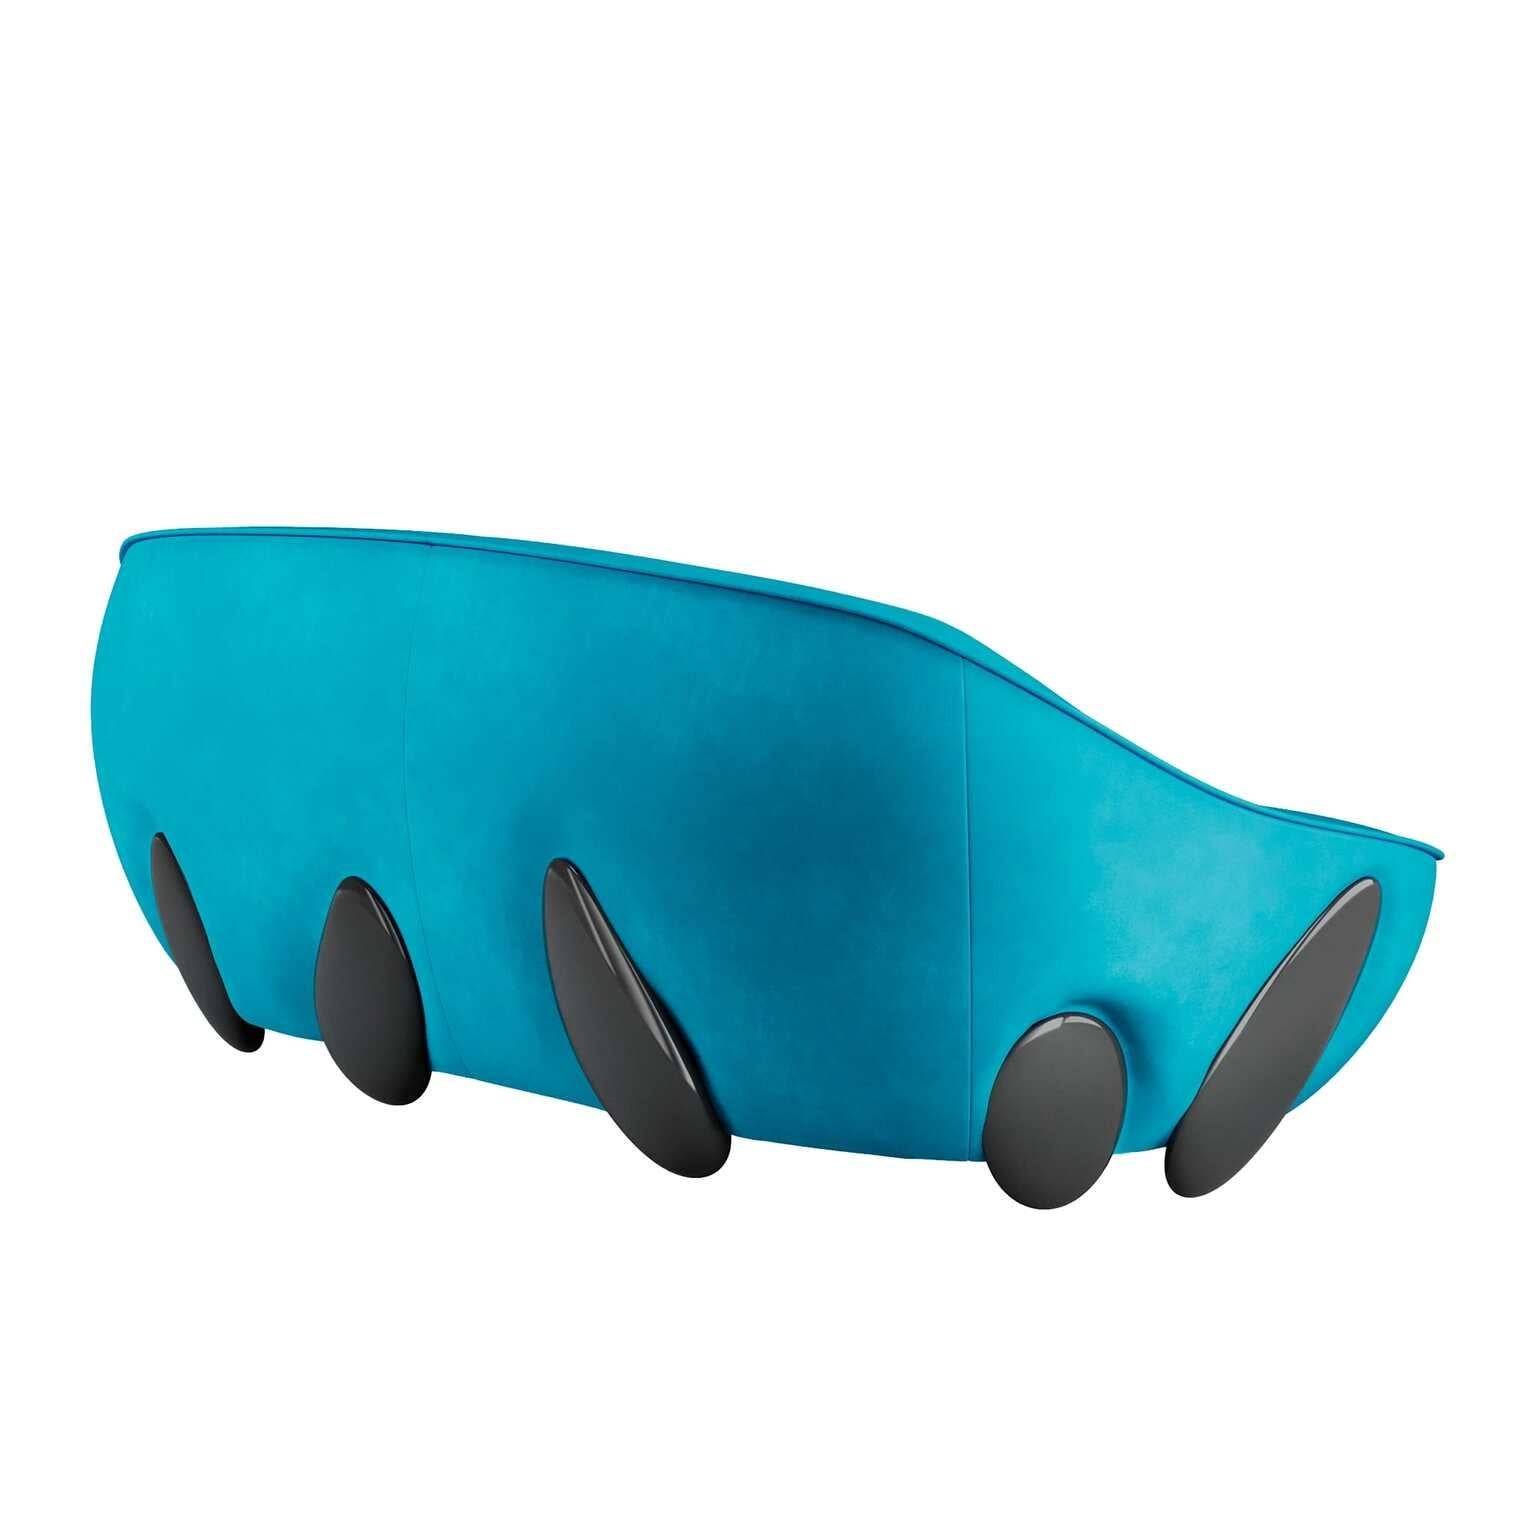 Zeitgenössisches rundes Sofa aus blauem Samt mit schwarz lackierten Beinen
Lunarys Sofa Blue ist ein modernes Sofa mit einer glamourösen Ästhetik. Sein pralles Volumen und sein einladendes Design machen dieses moderne Sofa zu einem perfekten,